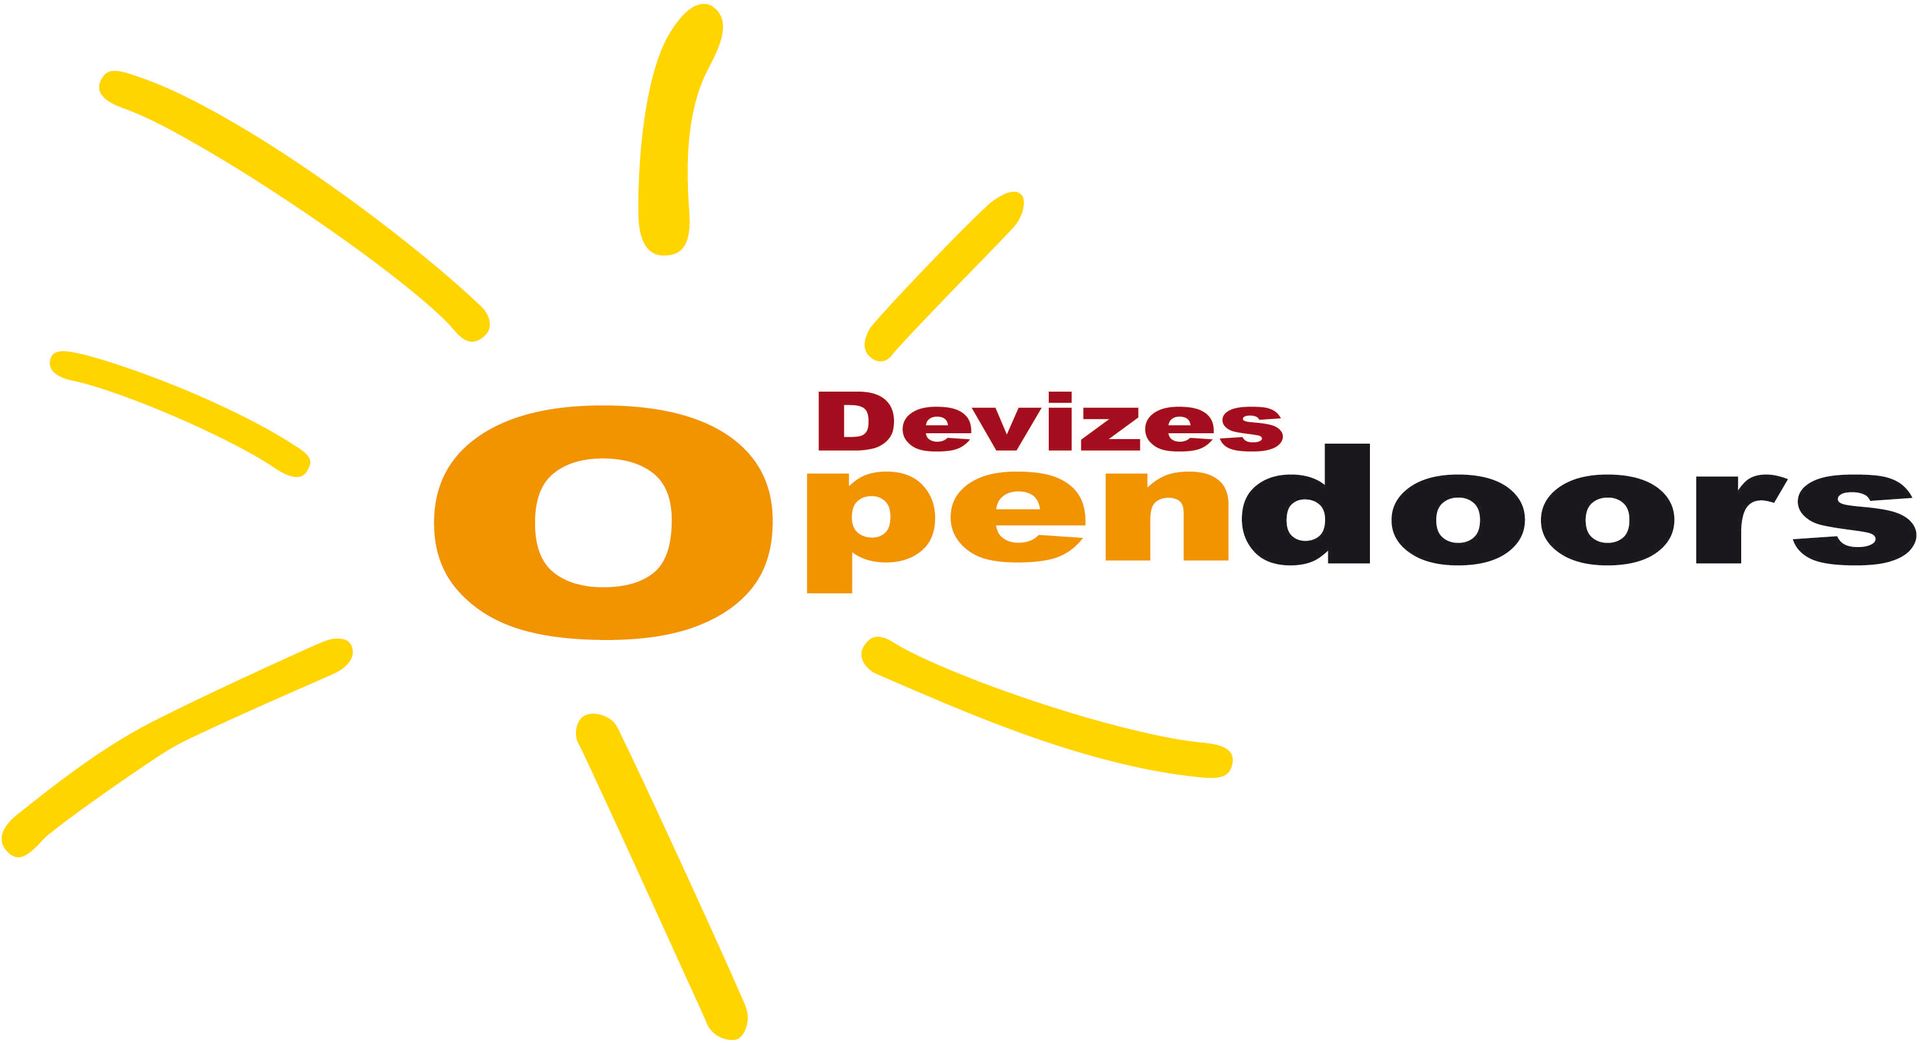 Devizes Opendoors logo